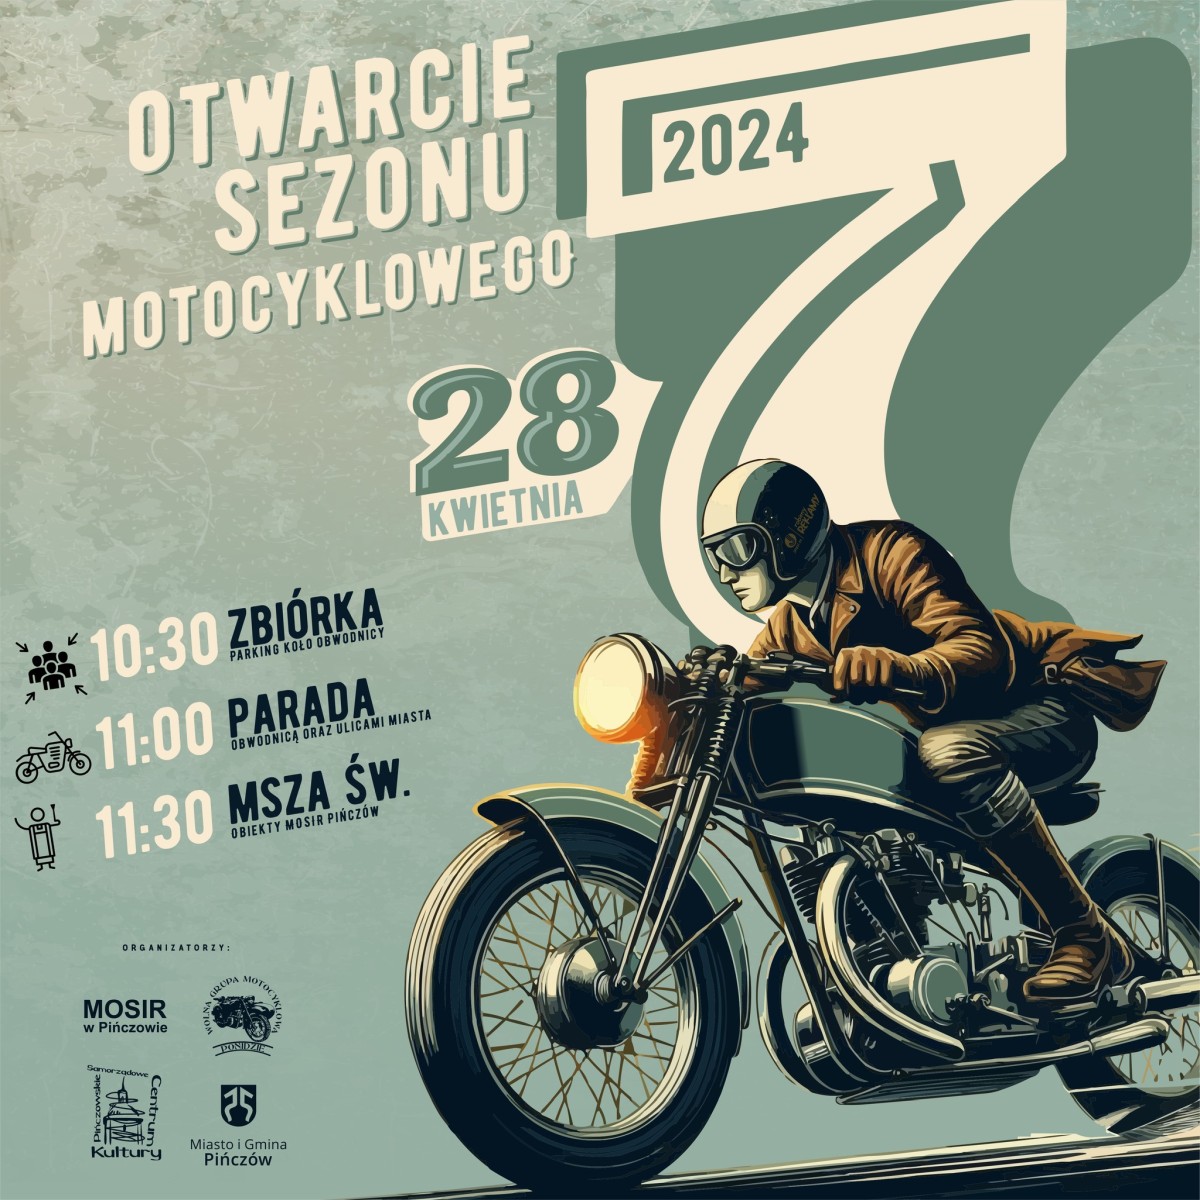 Wolna Grupa Motocyklowa Ponidzie zaprasza w niedziel, 28 
kwietnia 2024 roku wszystkich entuzjastw i mionikw motocykli na 
wyjtkowe wydarzenie - Rozpoczcie Sezonu Motocyklowego 2024 w 
Piczowie. 